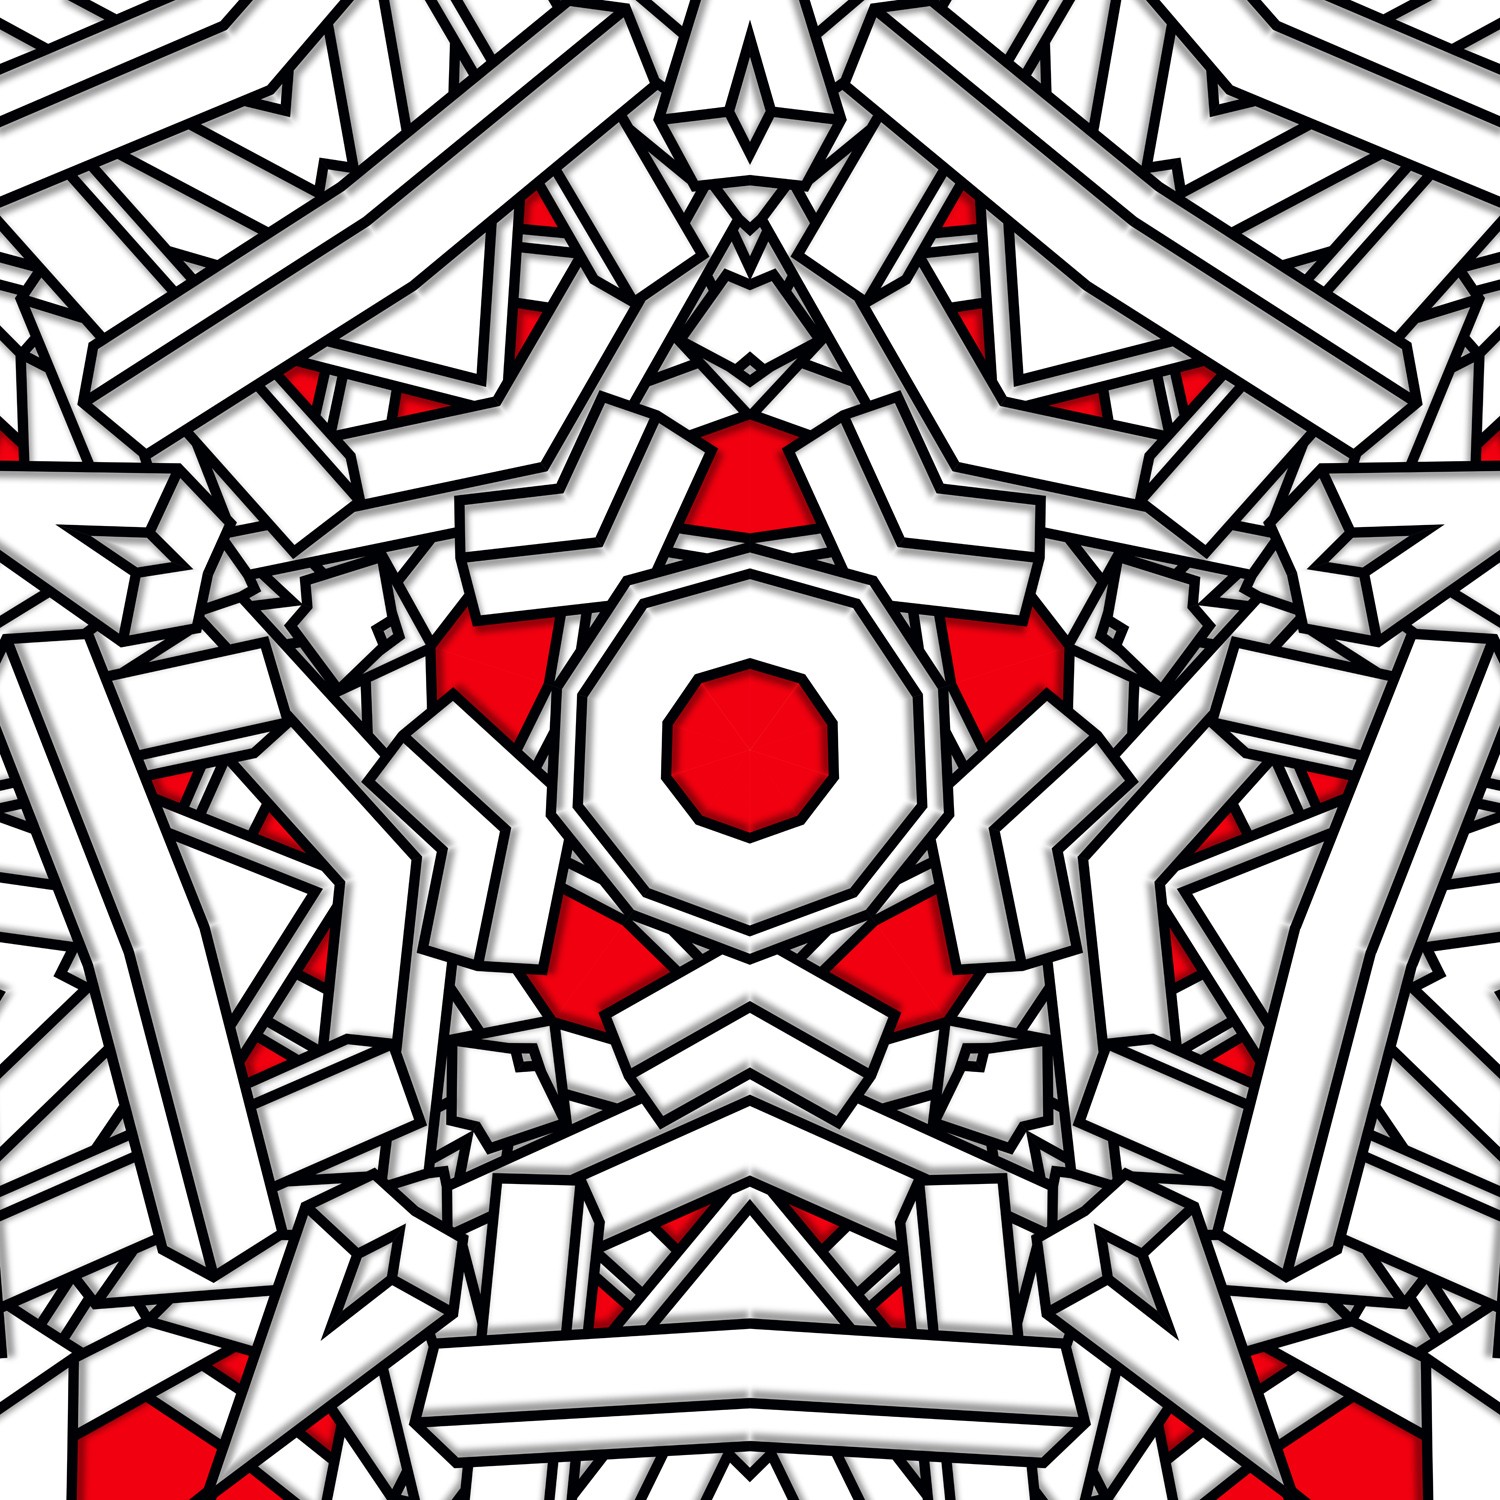 Kaleidoscope from timber frame-1.jpg